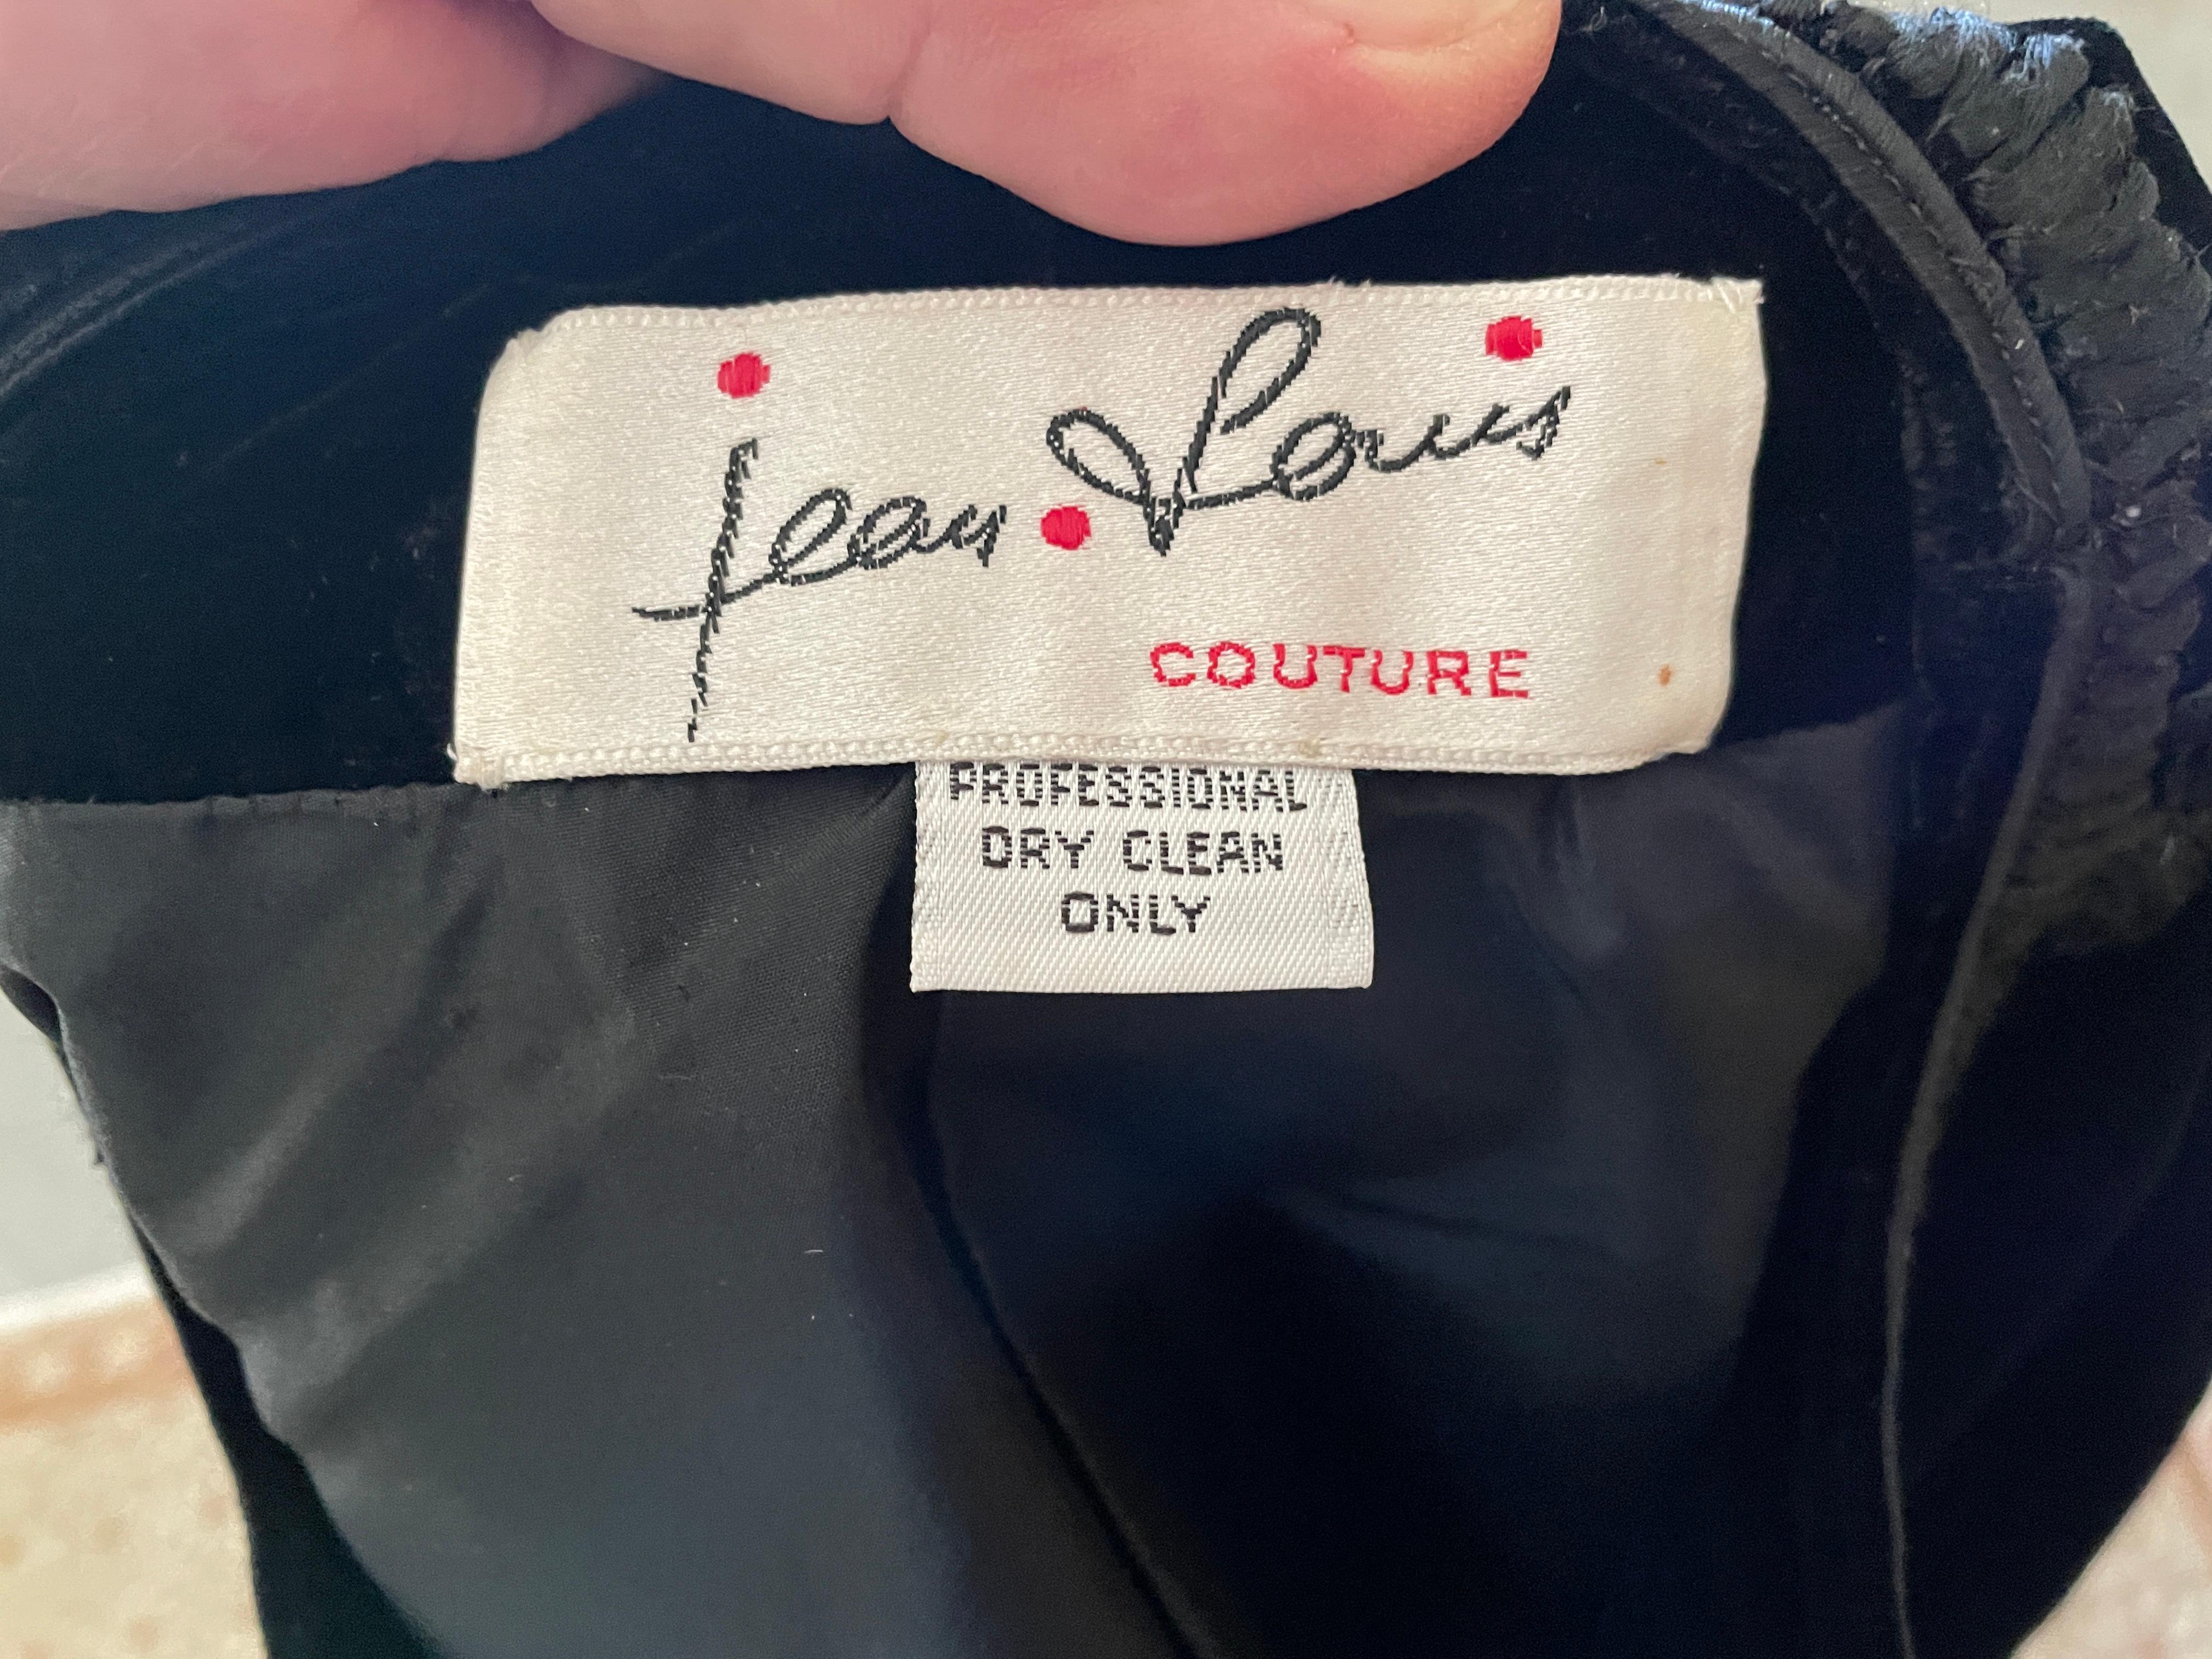 Jean-Louis Couture 1960's black velvet jacket.
Bust 36